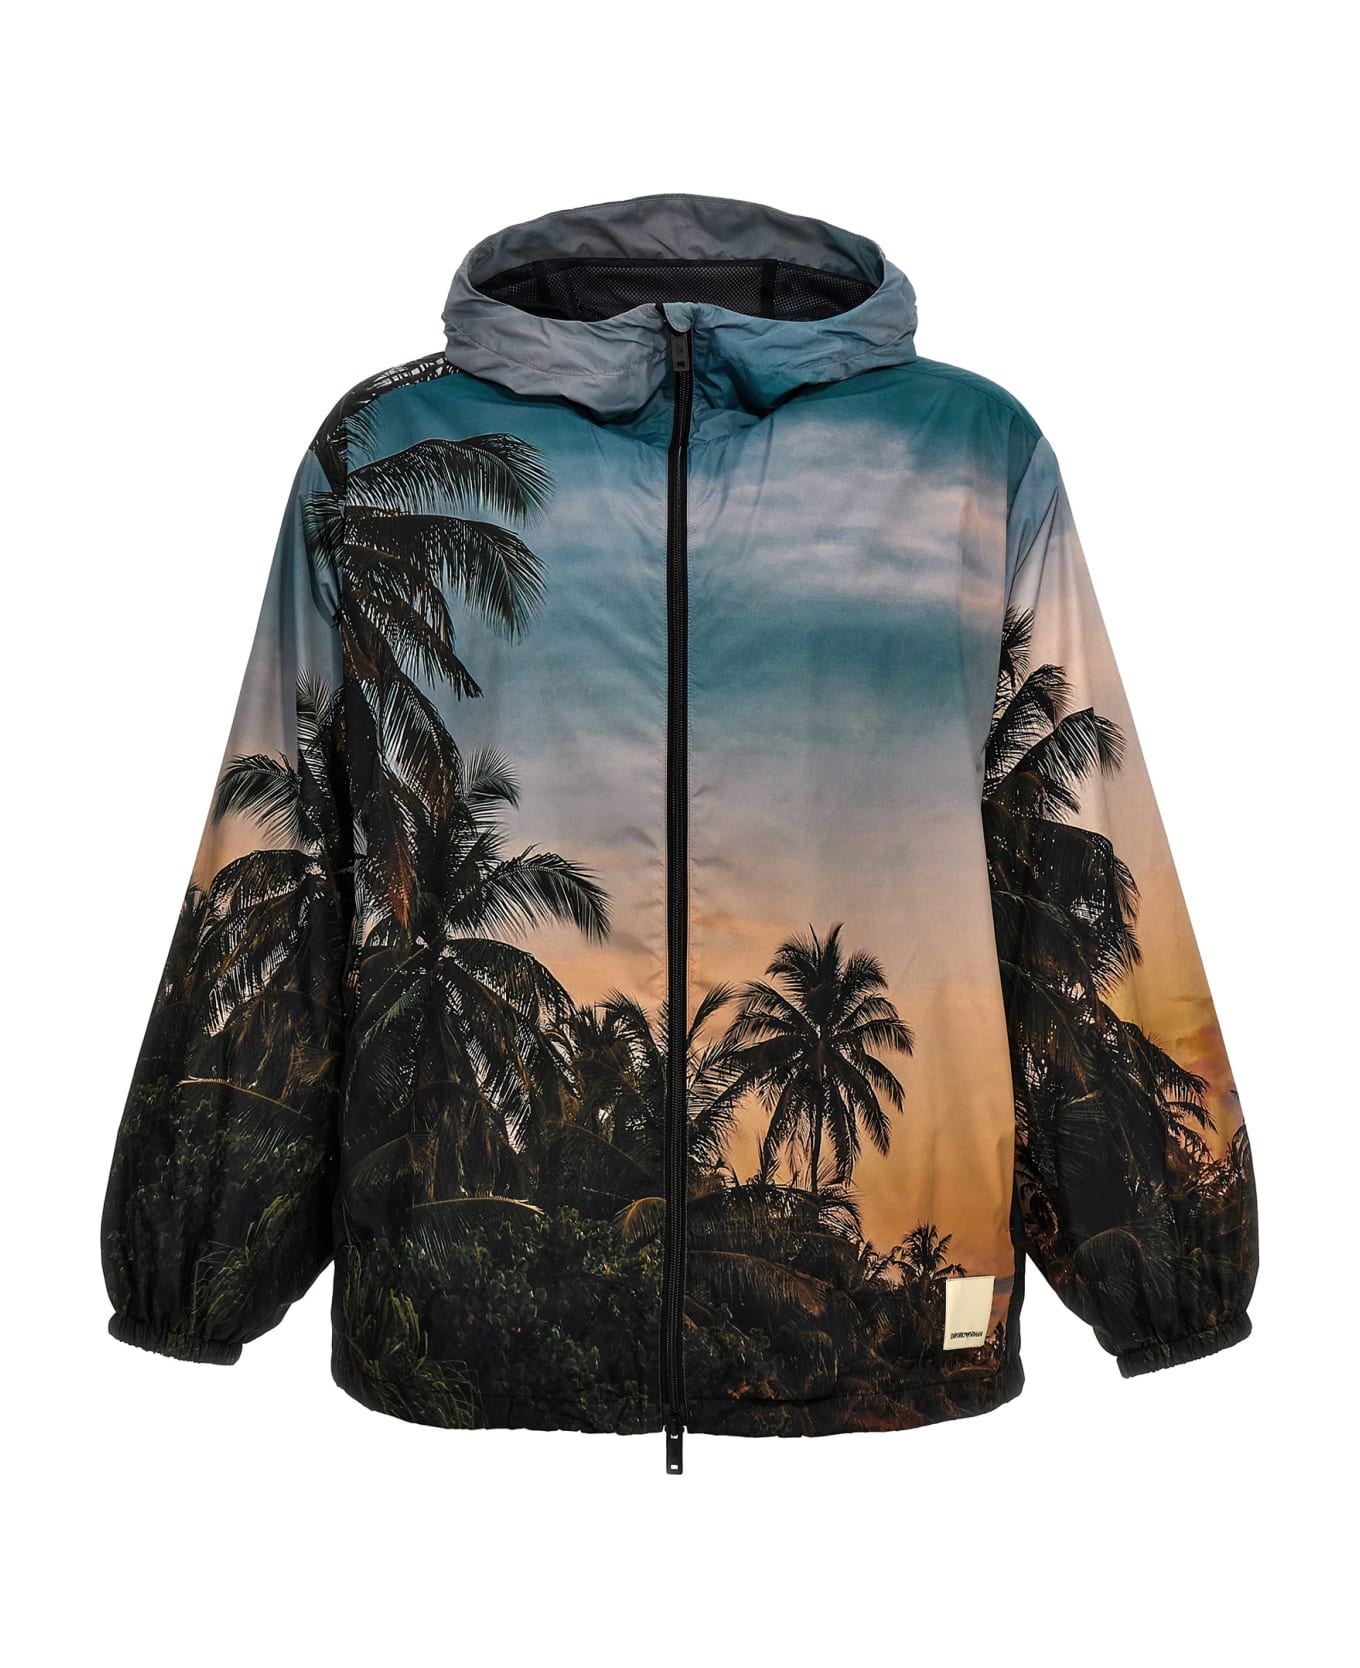 Emporio Armani 'tropicale' Hooded Jacket - Multicolor